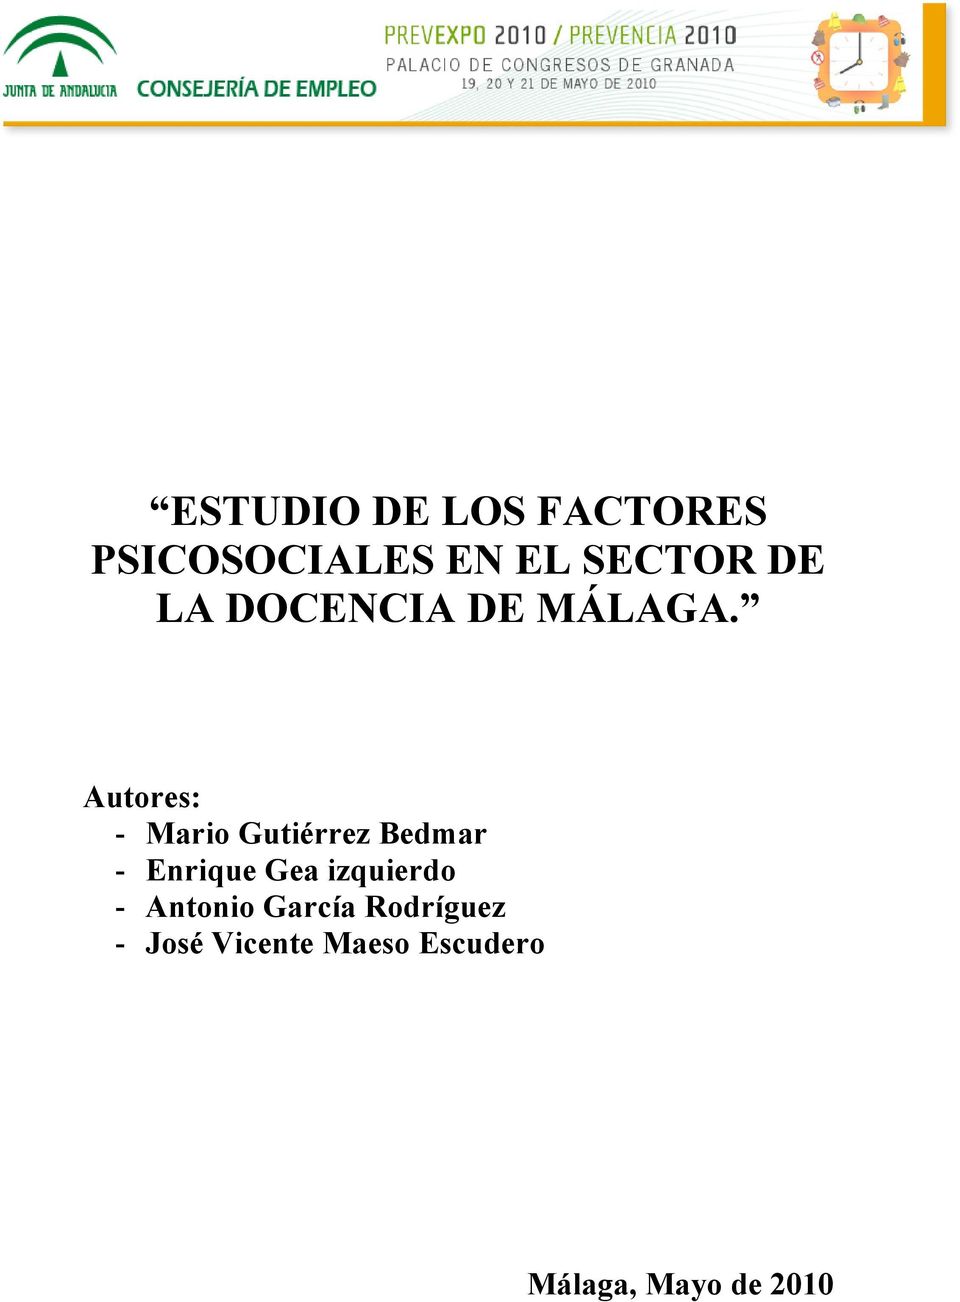 Autores: - Mario Gutiérrez Bedmar - Enrique Gea